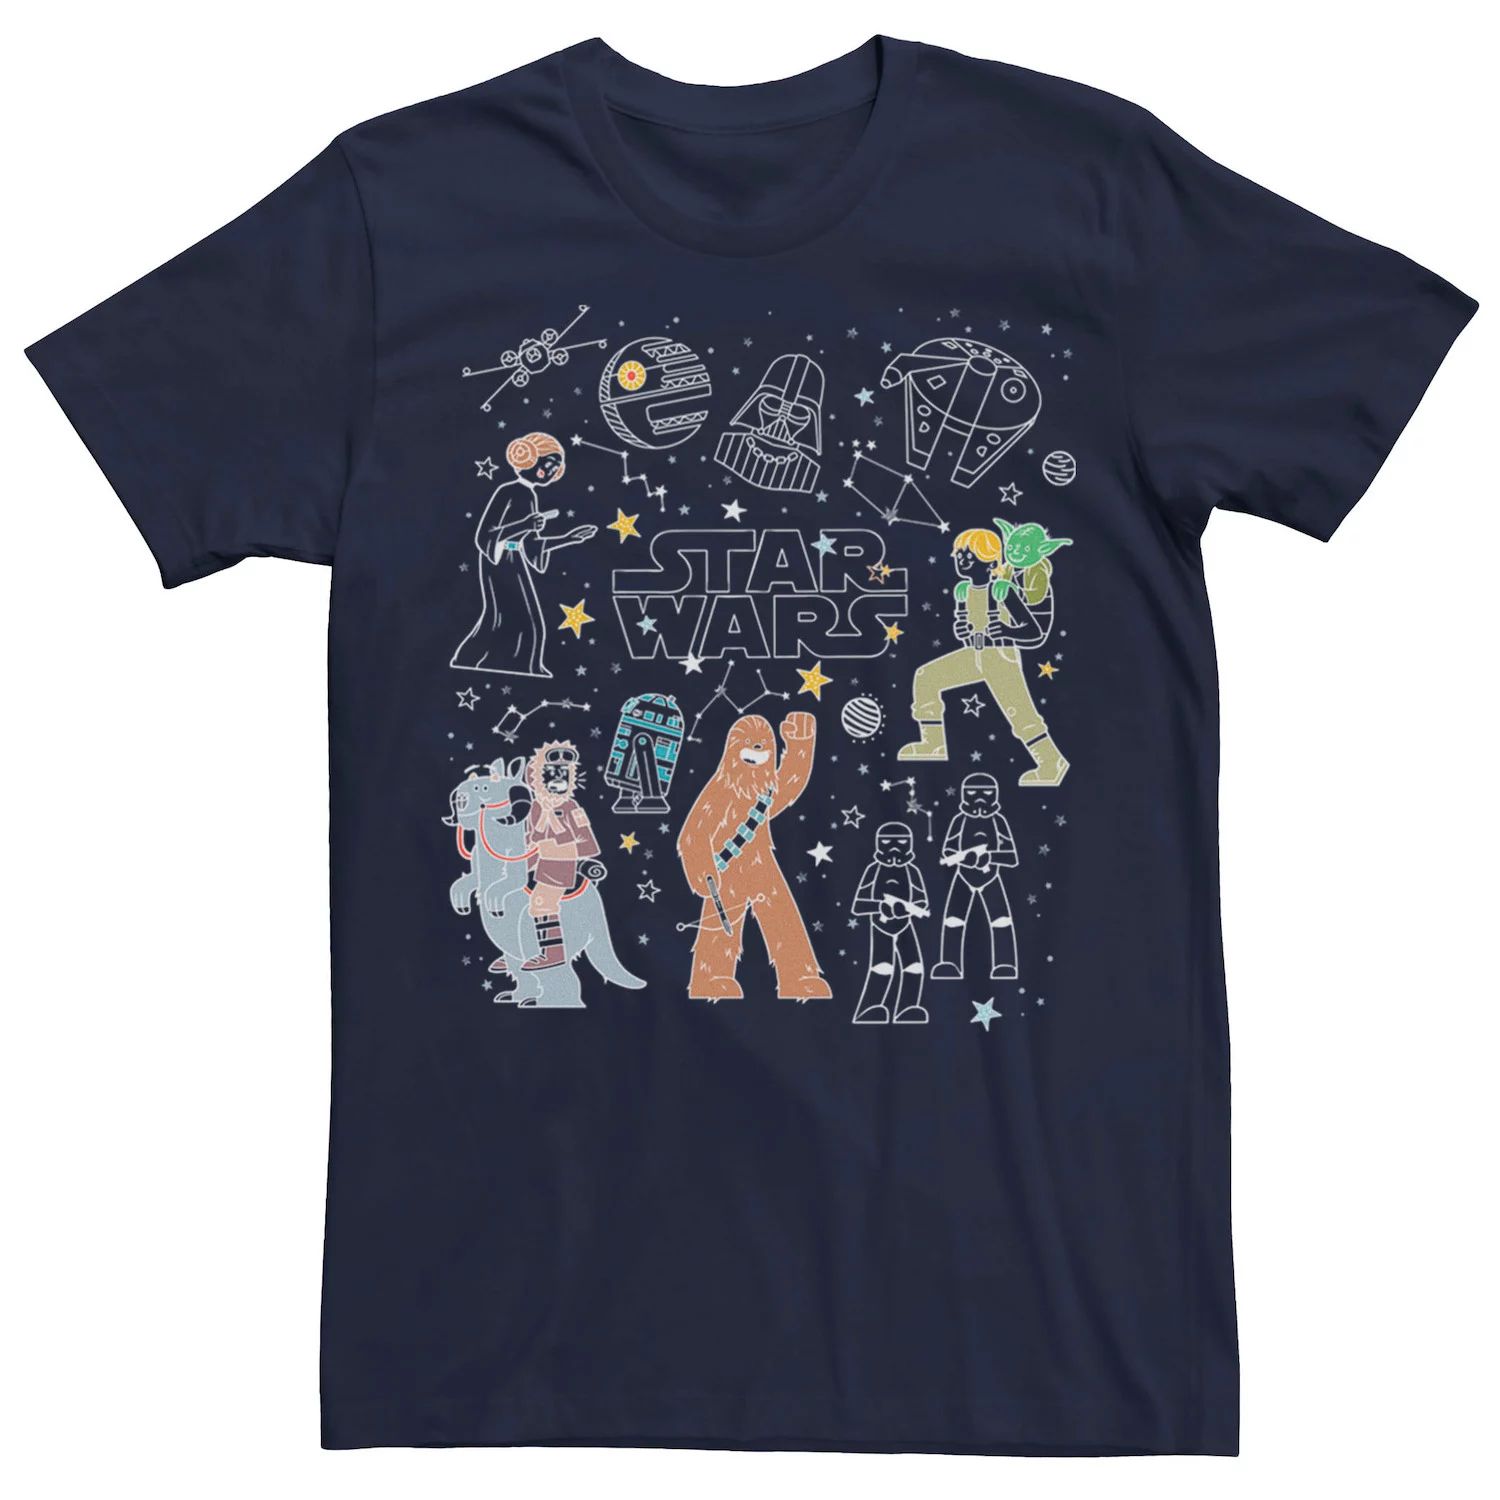 Мужская футболка с рисунками «Звездные войны» и «Созвездие», Синяя Star Wars, синий